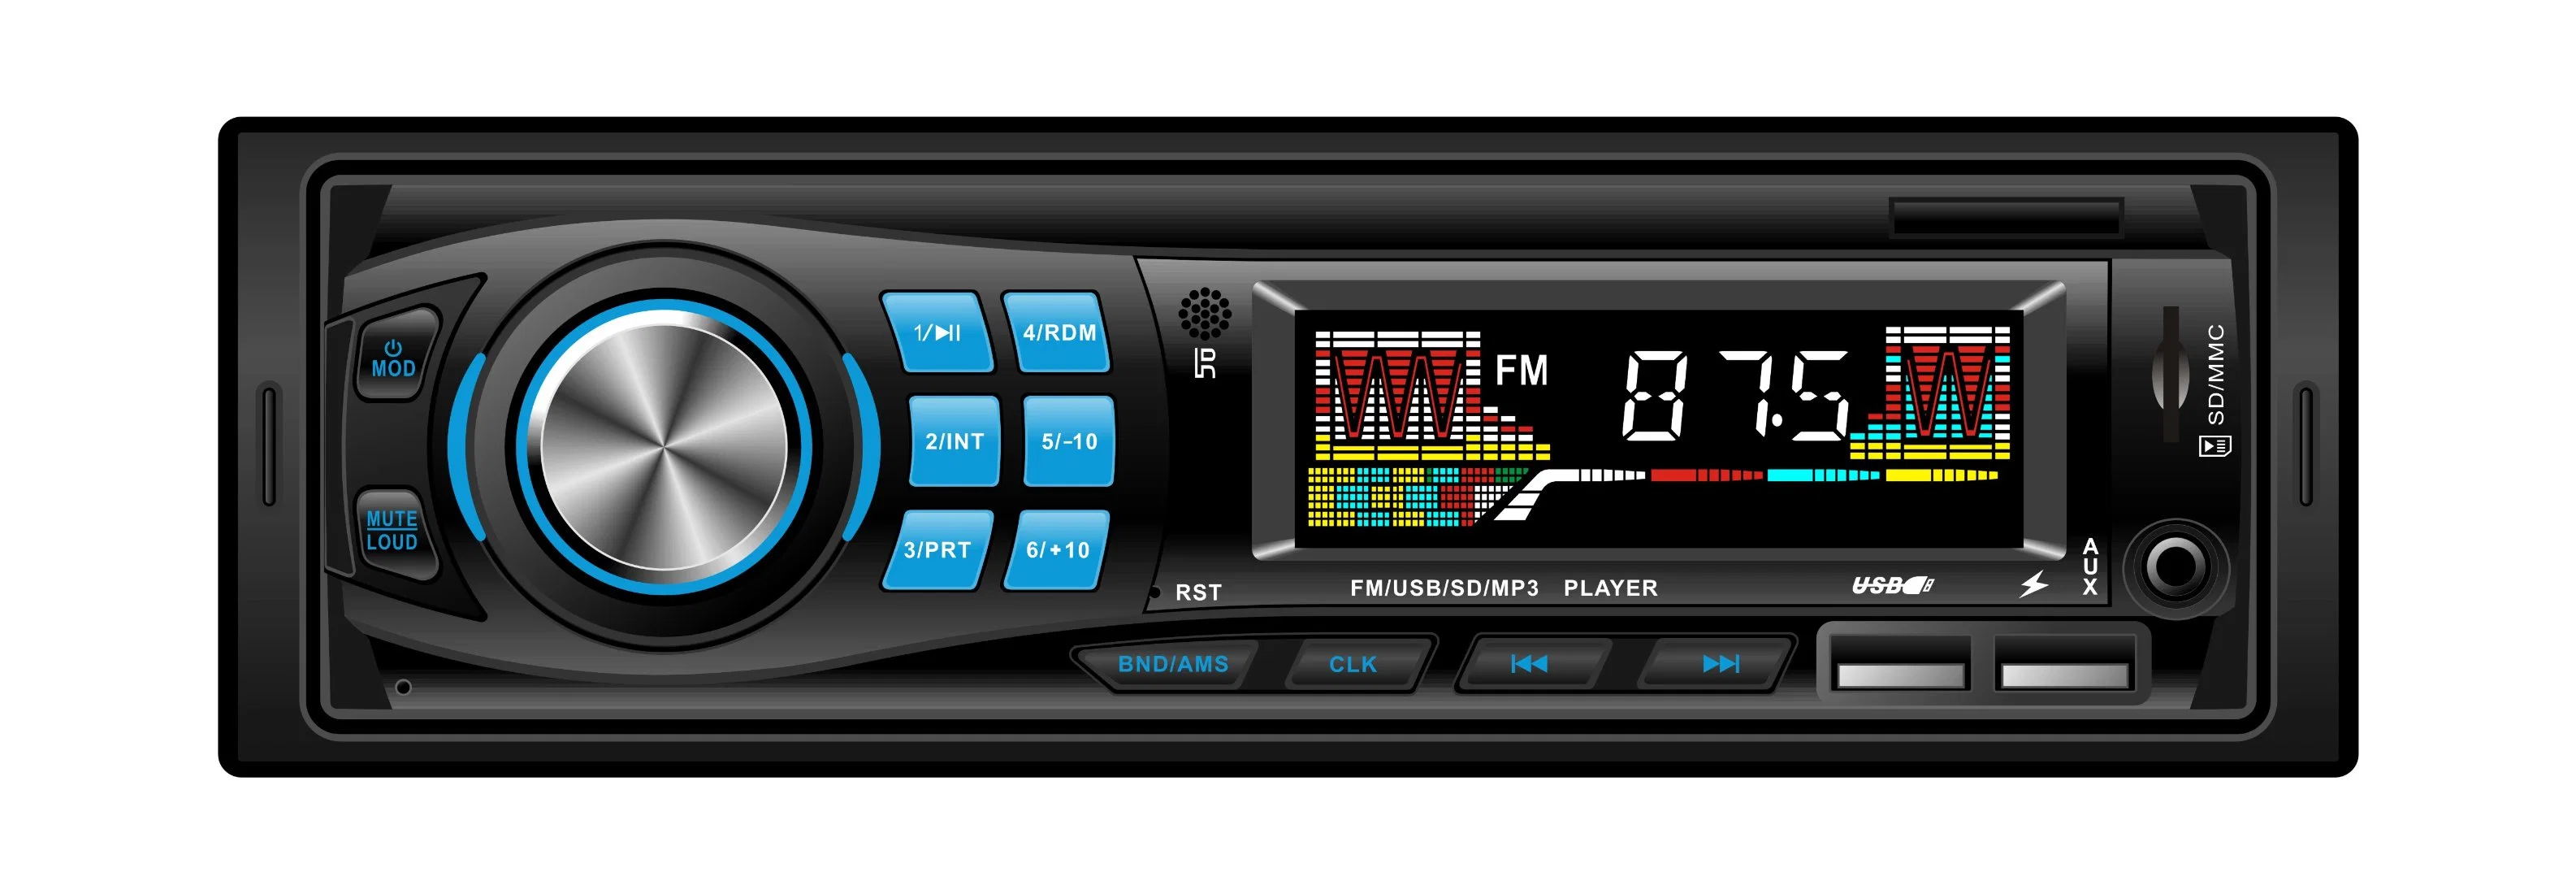 نظام مشغل MP3 صوتي 1DIN L3013 للسيارة الراديو